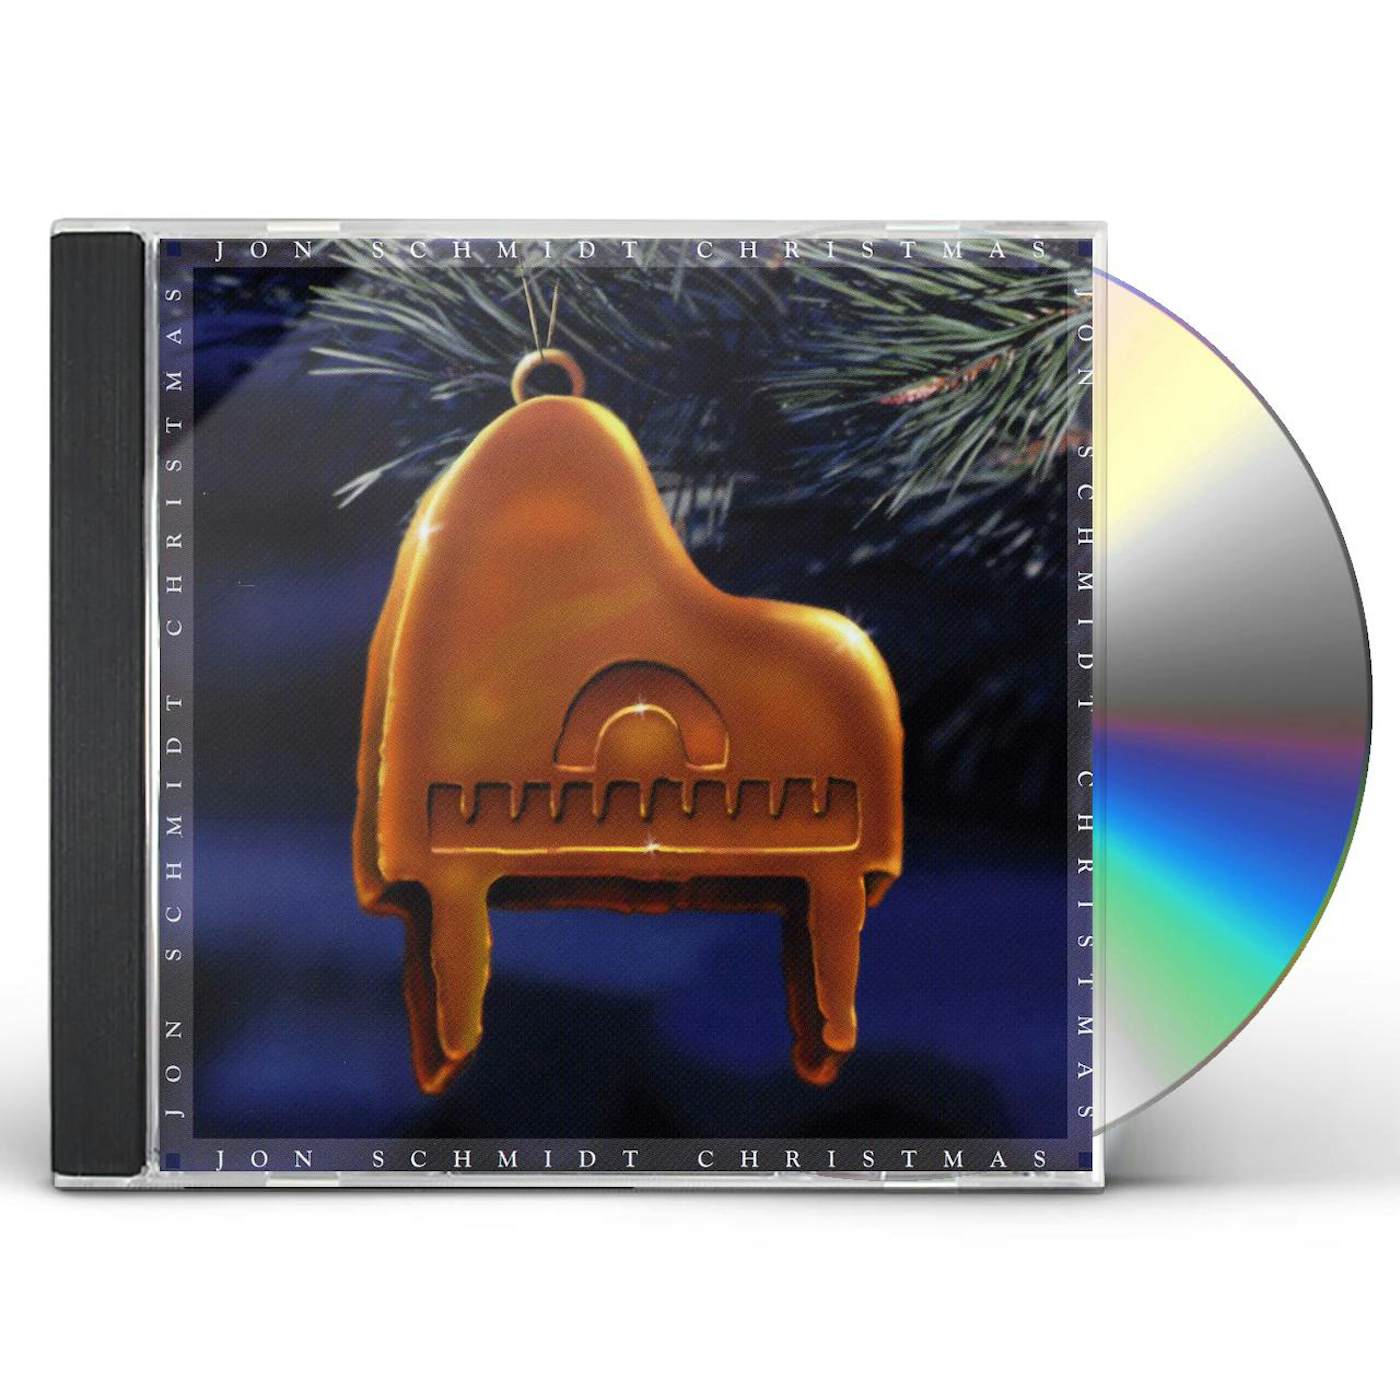 JON SCHMIDT CHRISTMAS CD